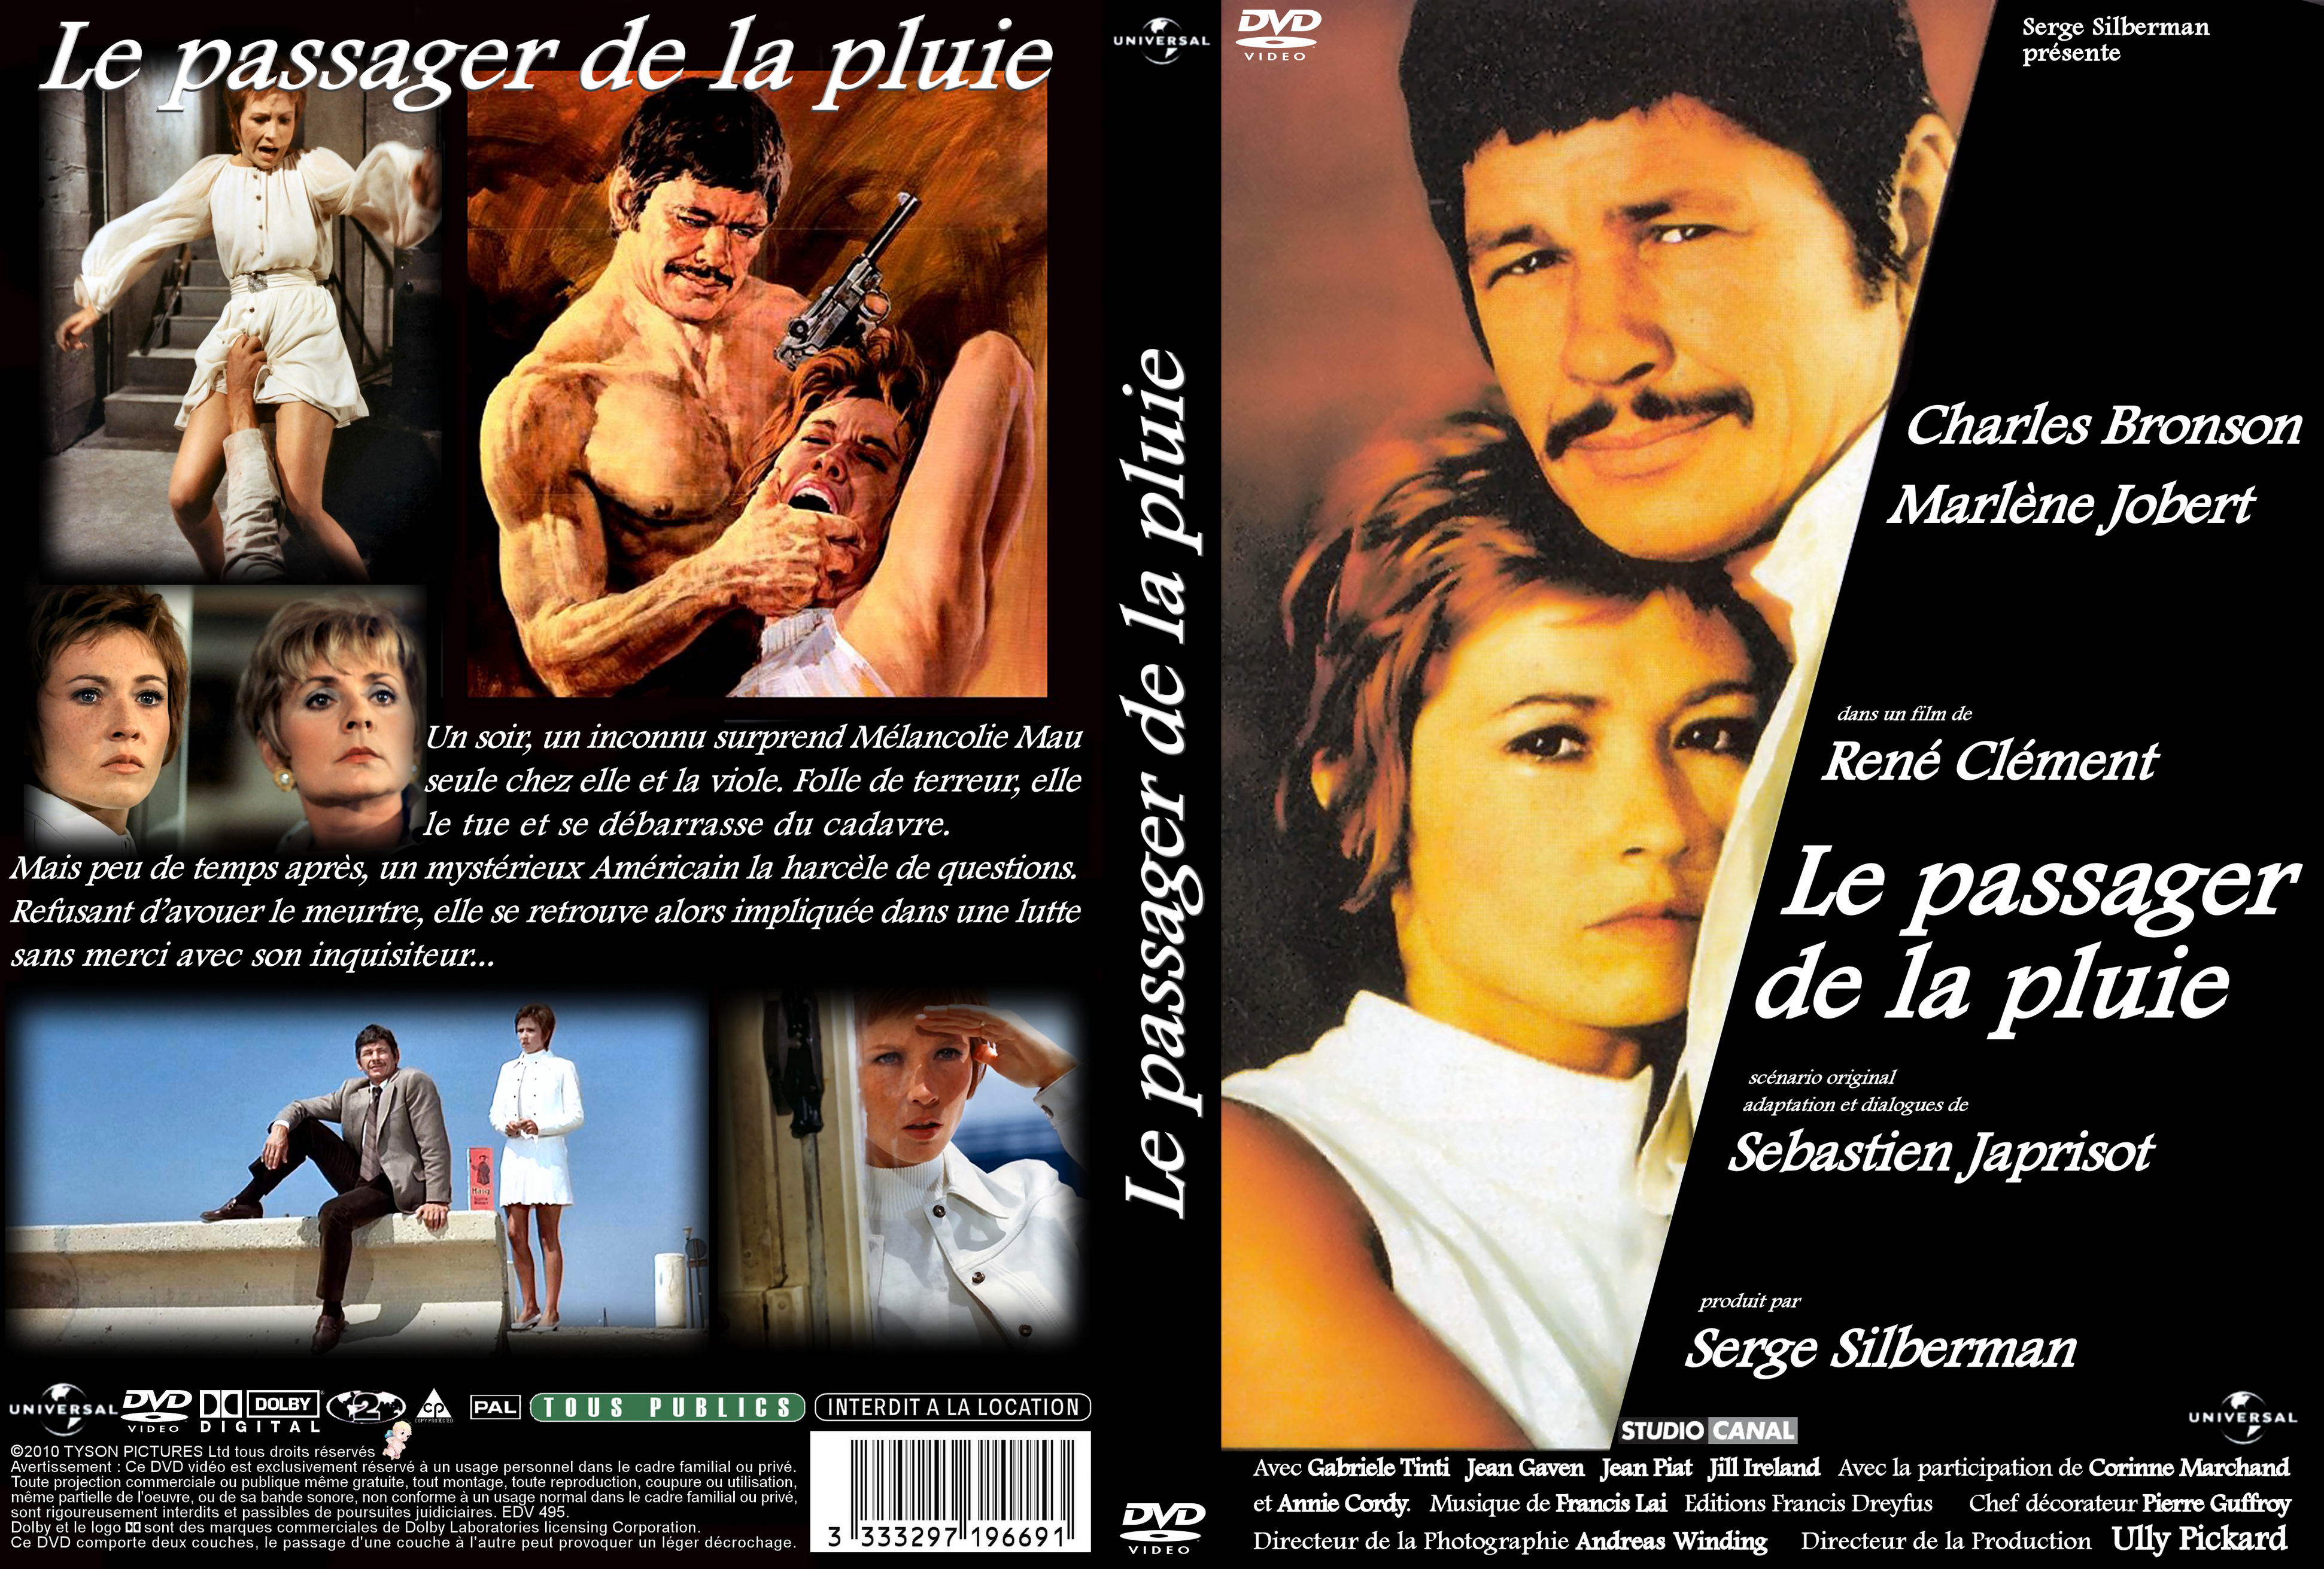 Jaquette DVD de Le passager de la pluie custom - Cinéma Passion